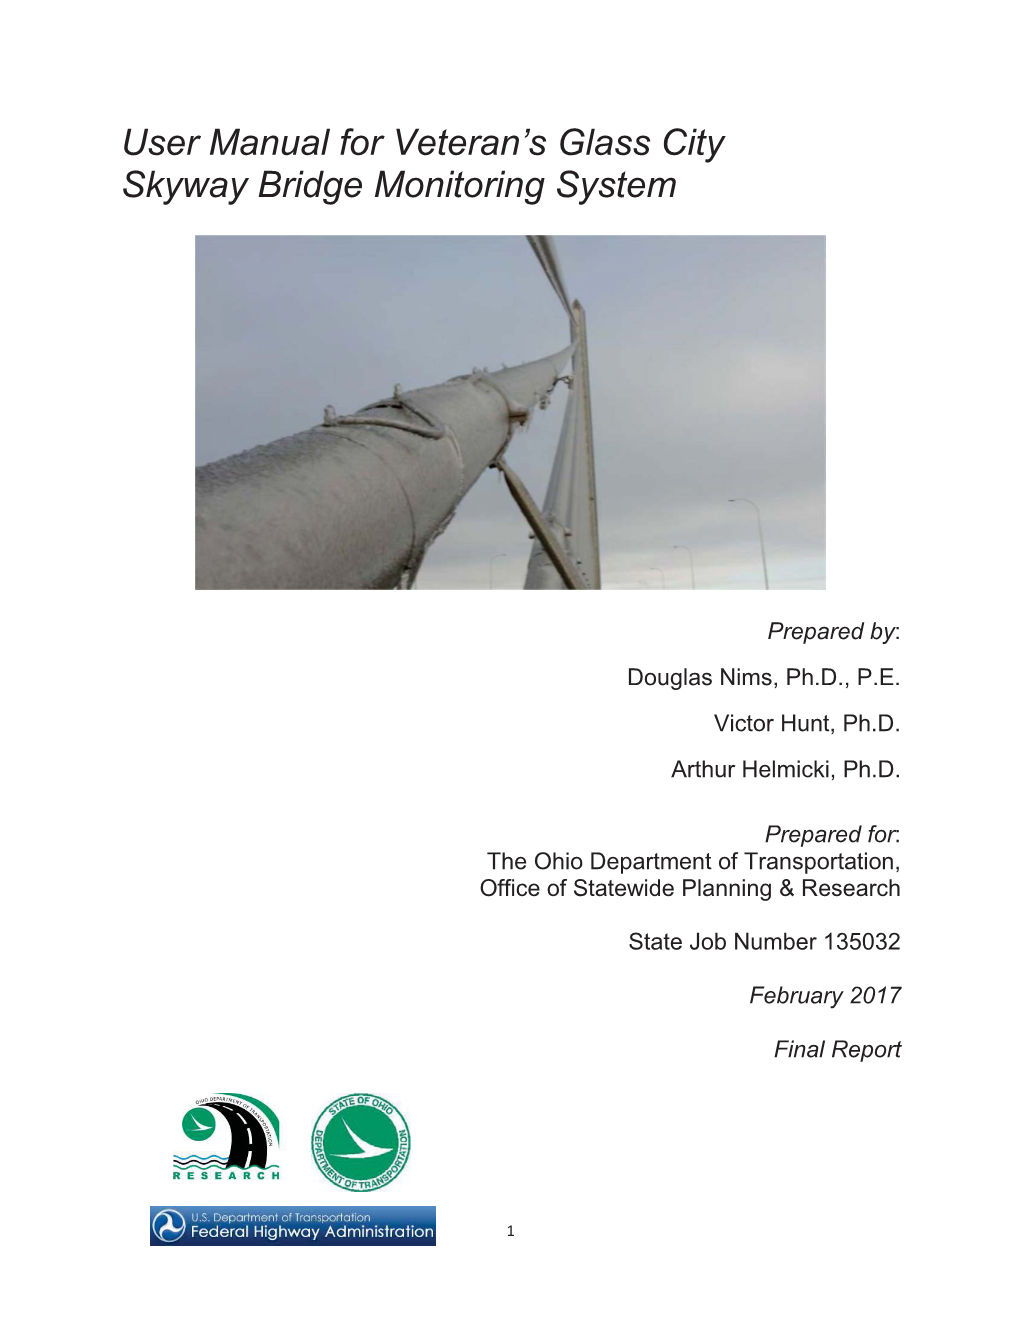 User Manual for Veteran's Glass City Skyway Bridge